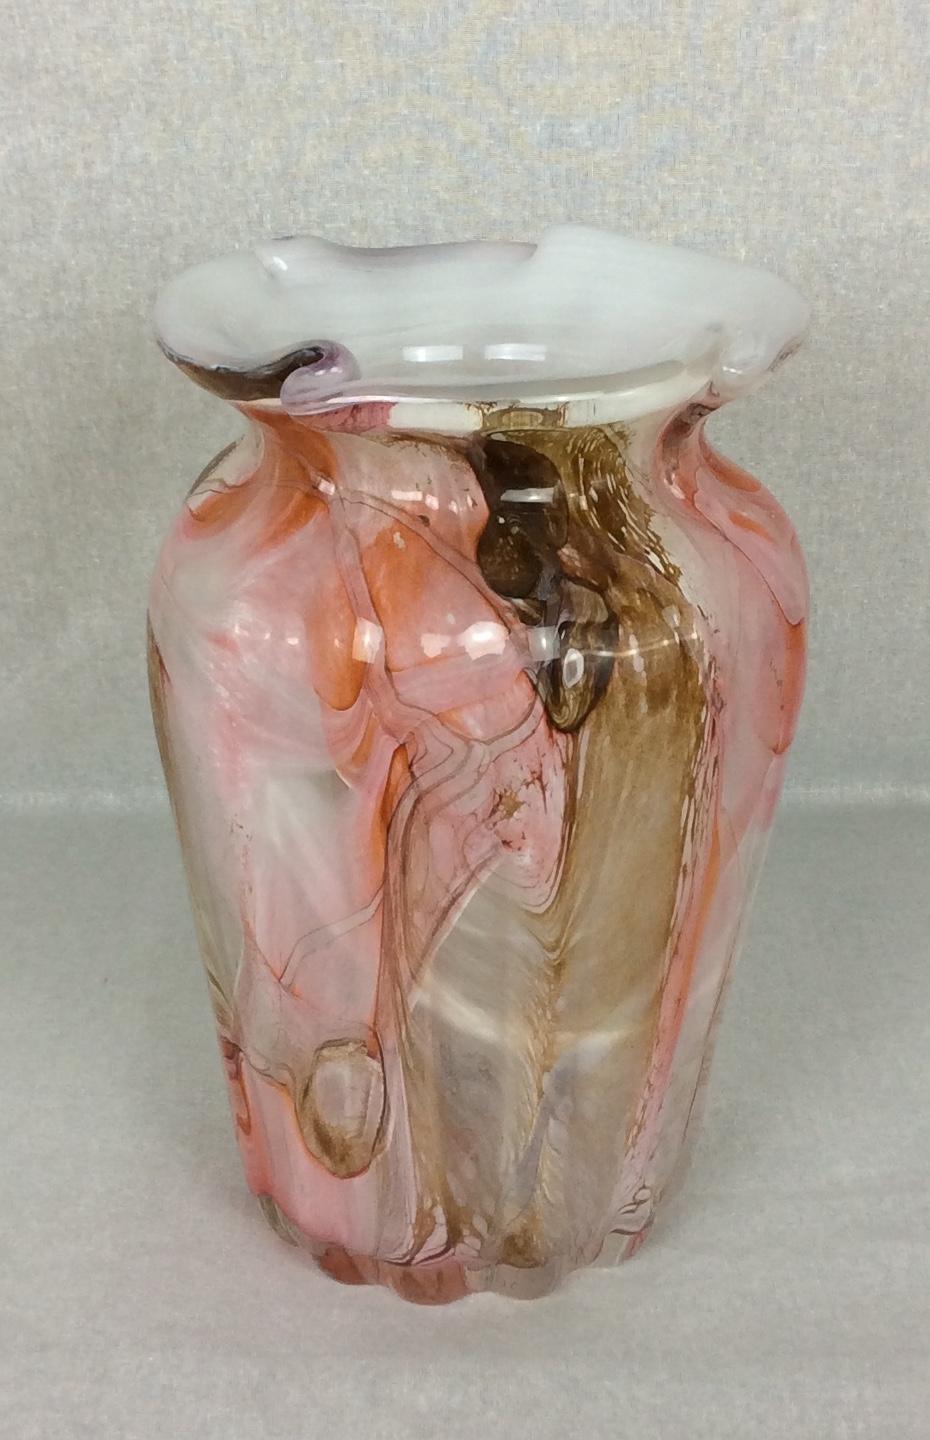 Schöne Fratelli Toso Murano mundgeblasenen italienischen Kunstglas skulpturalen Blumenvase. Das Stück hat gezogene Glasstücke im ganzen Körper:: mit sehr lebendigen Farben. 

Ein schönes Sammlerstück. Maße: 9 7/8